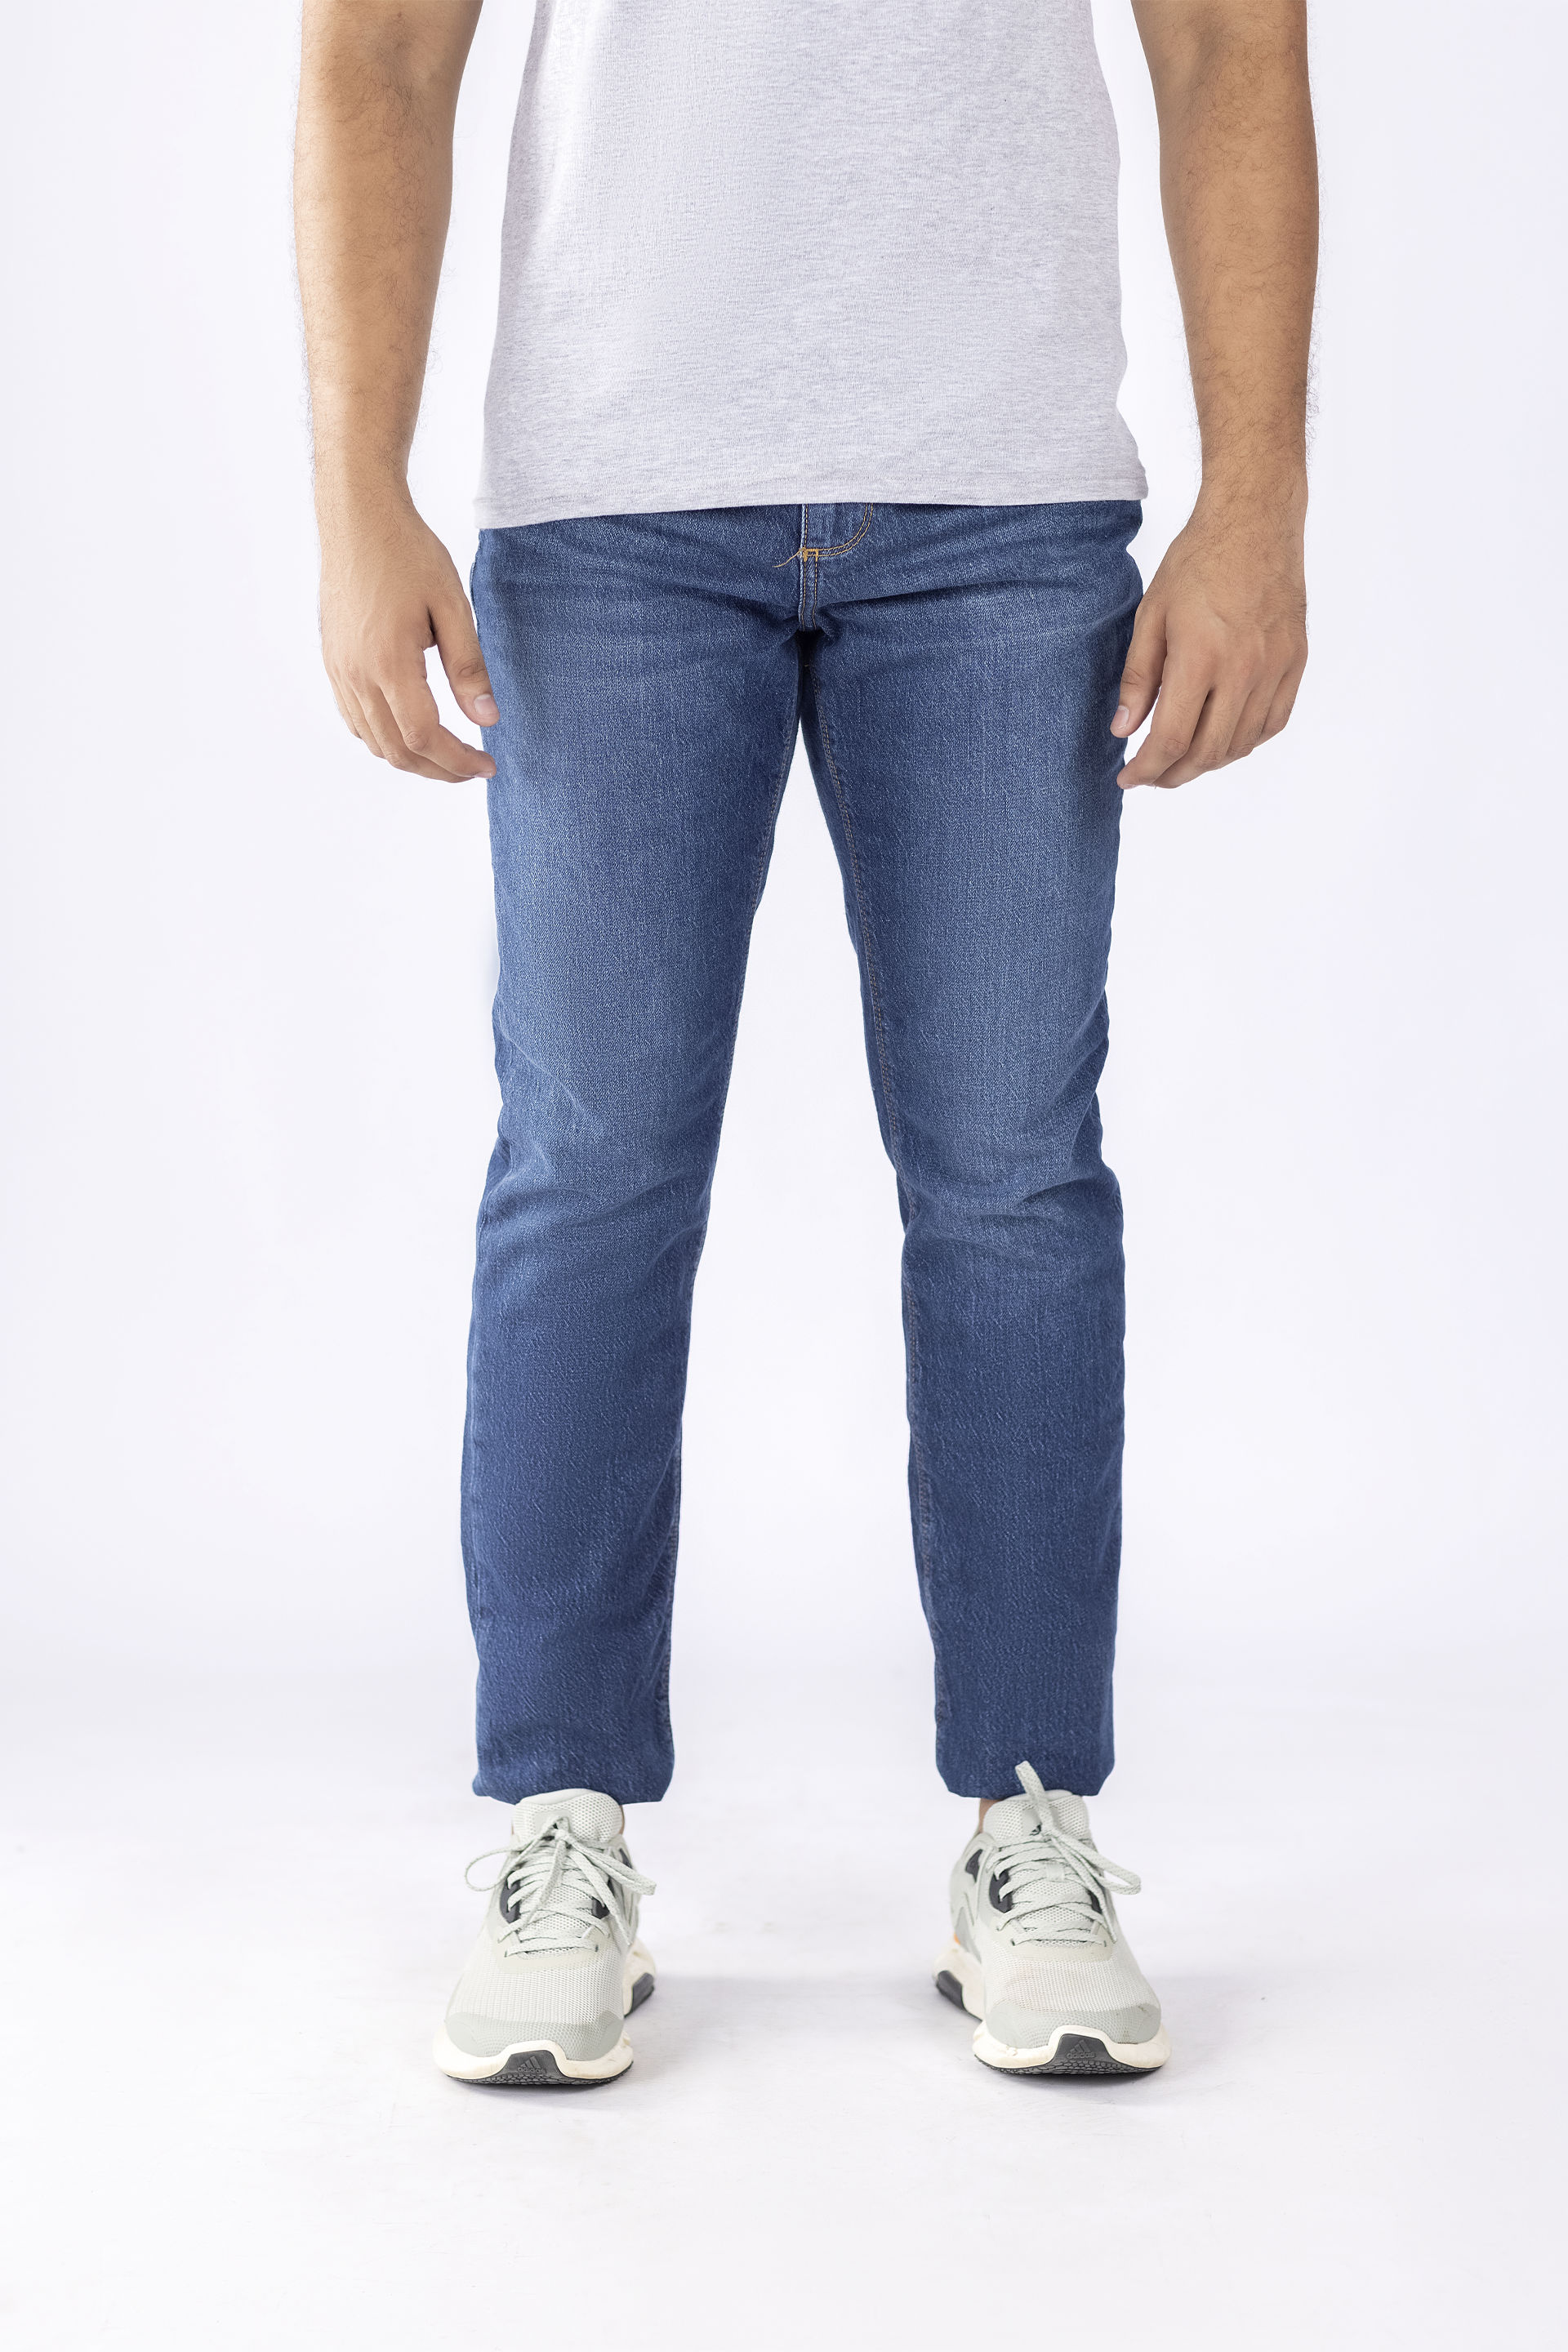 Jeans & Pants | Men Blue Jeans | Freeup